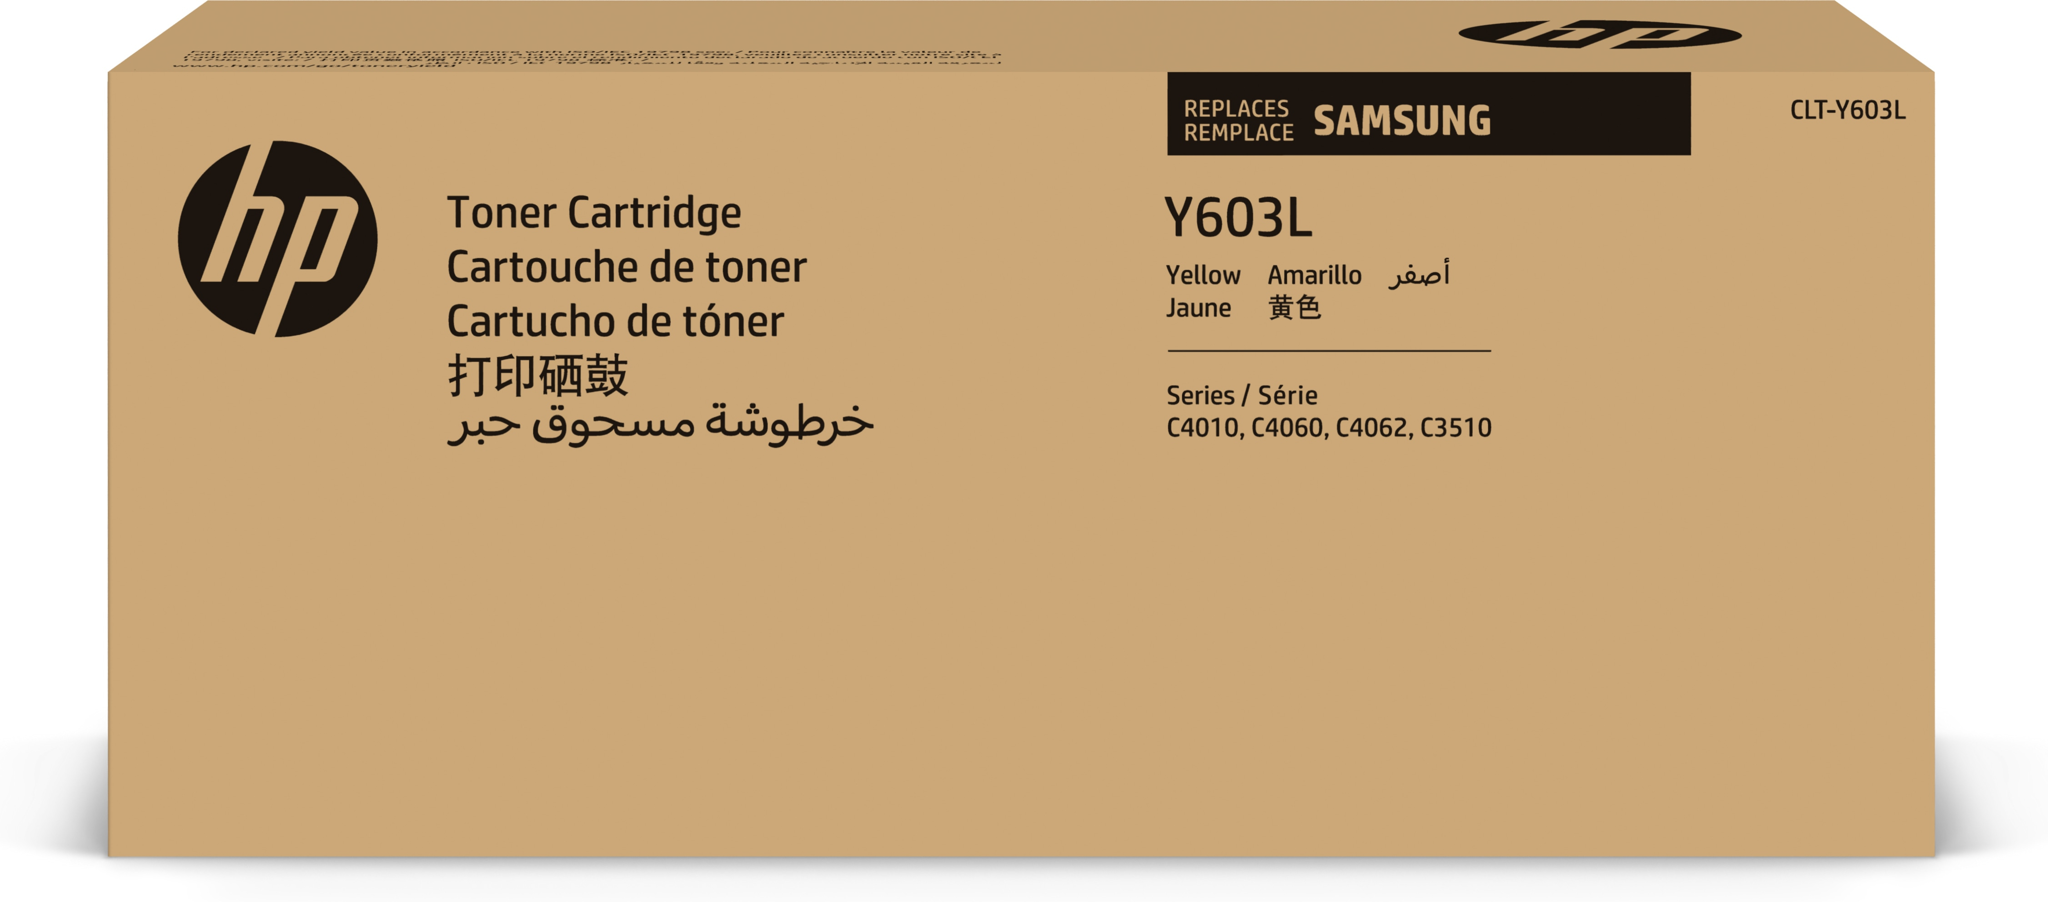 Bild von HP CLT-Y603L Tonerkartusche mit hoher Reichweite Gelb - 10000 Seiten - Gelb - 1 Stück(e)